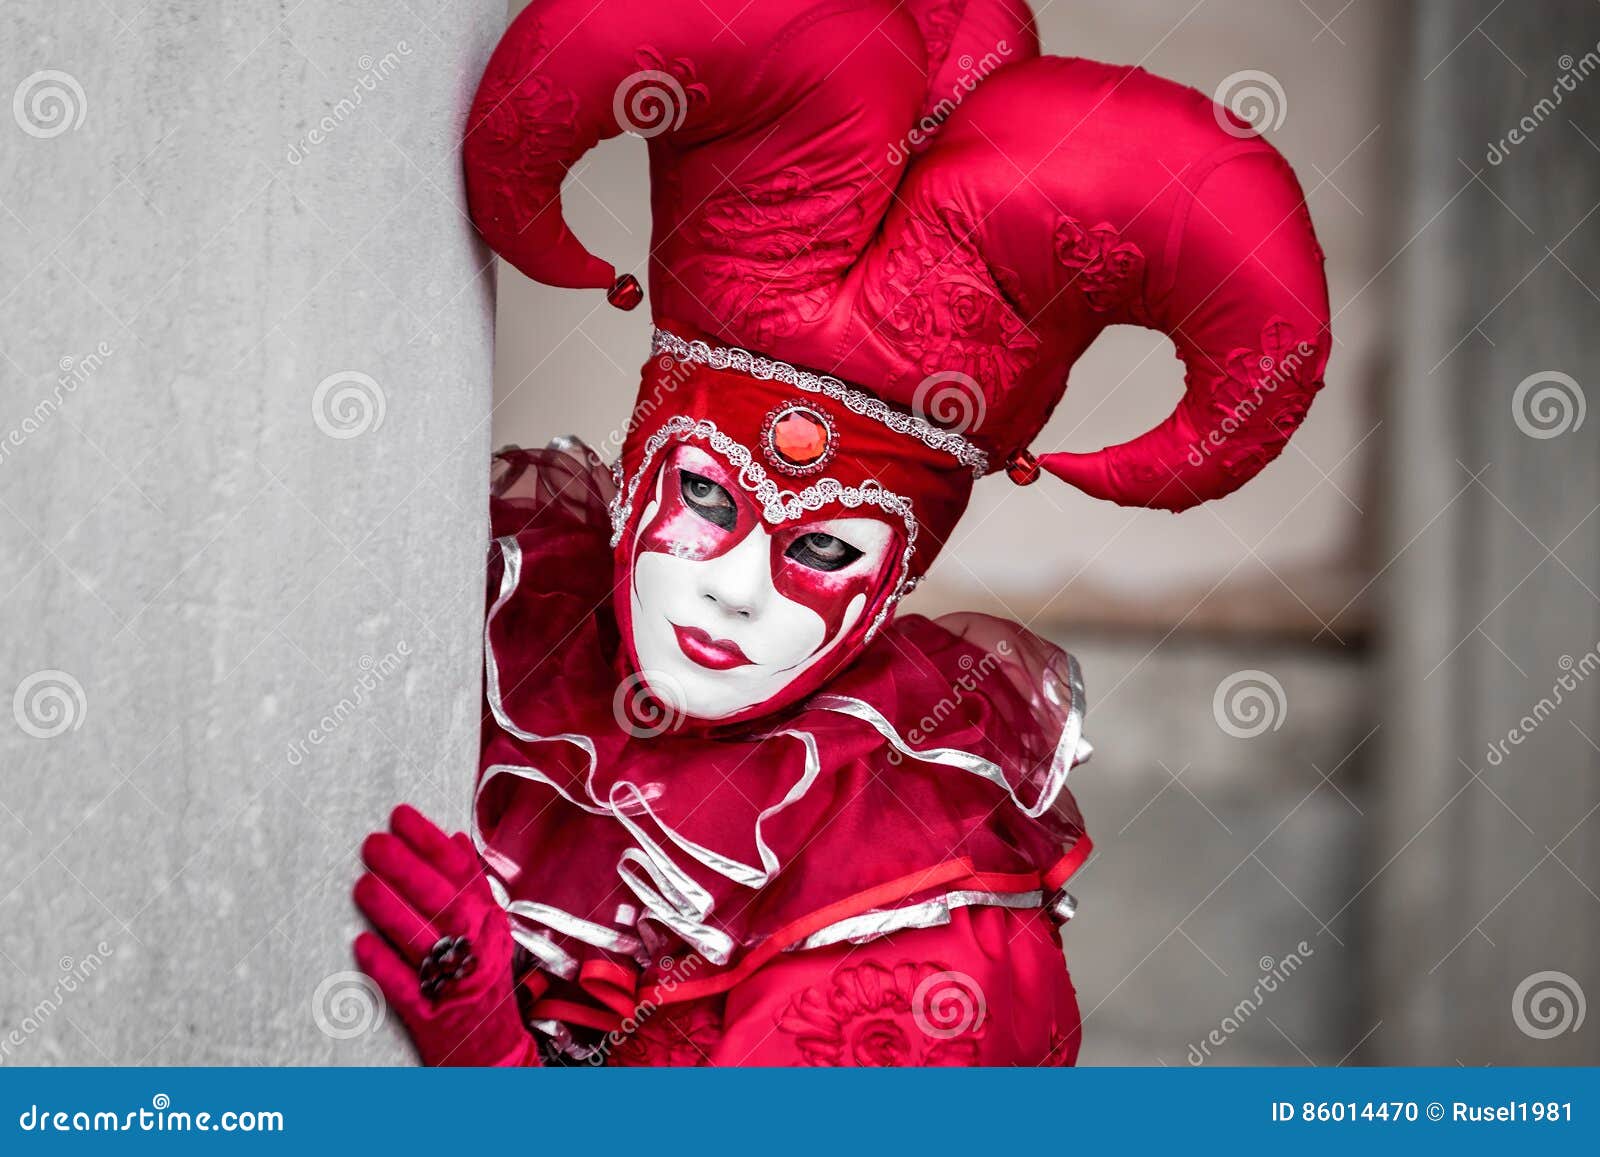 Creepy Clown Mask Paper Mache White Black Red Masks